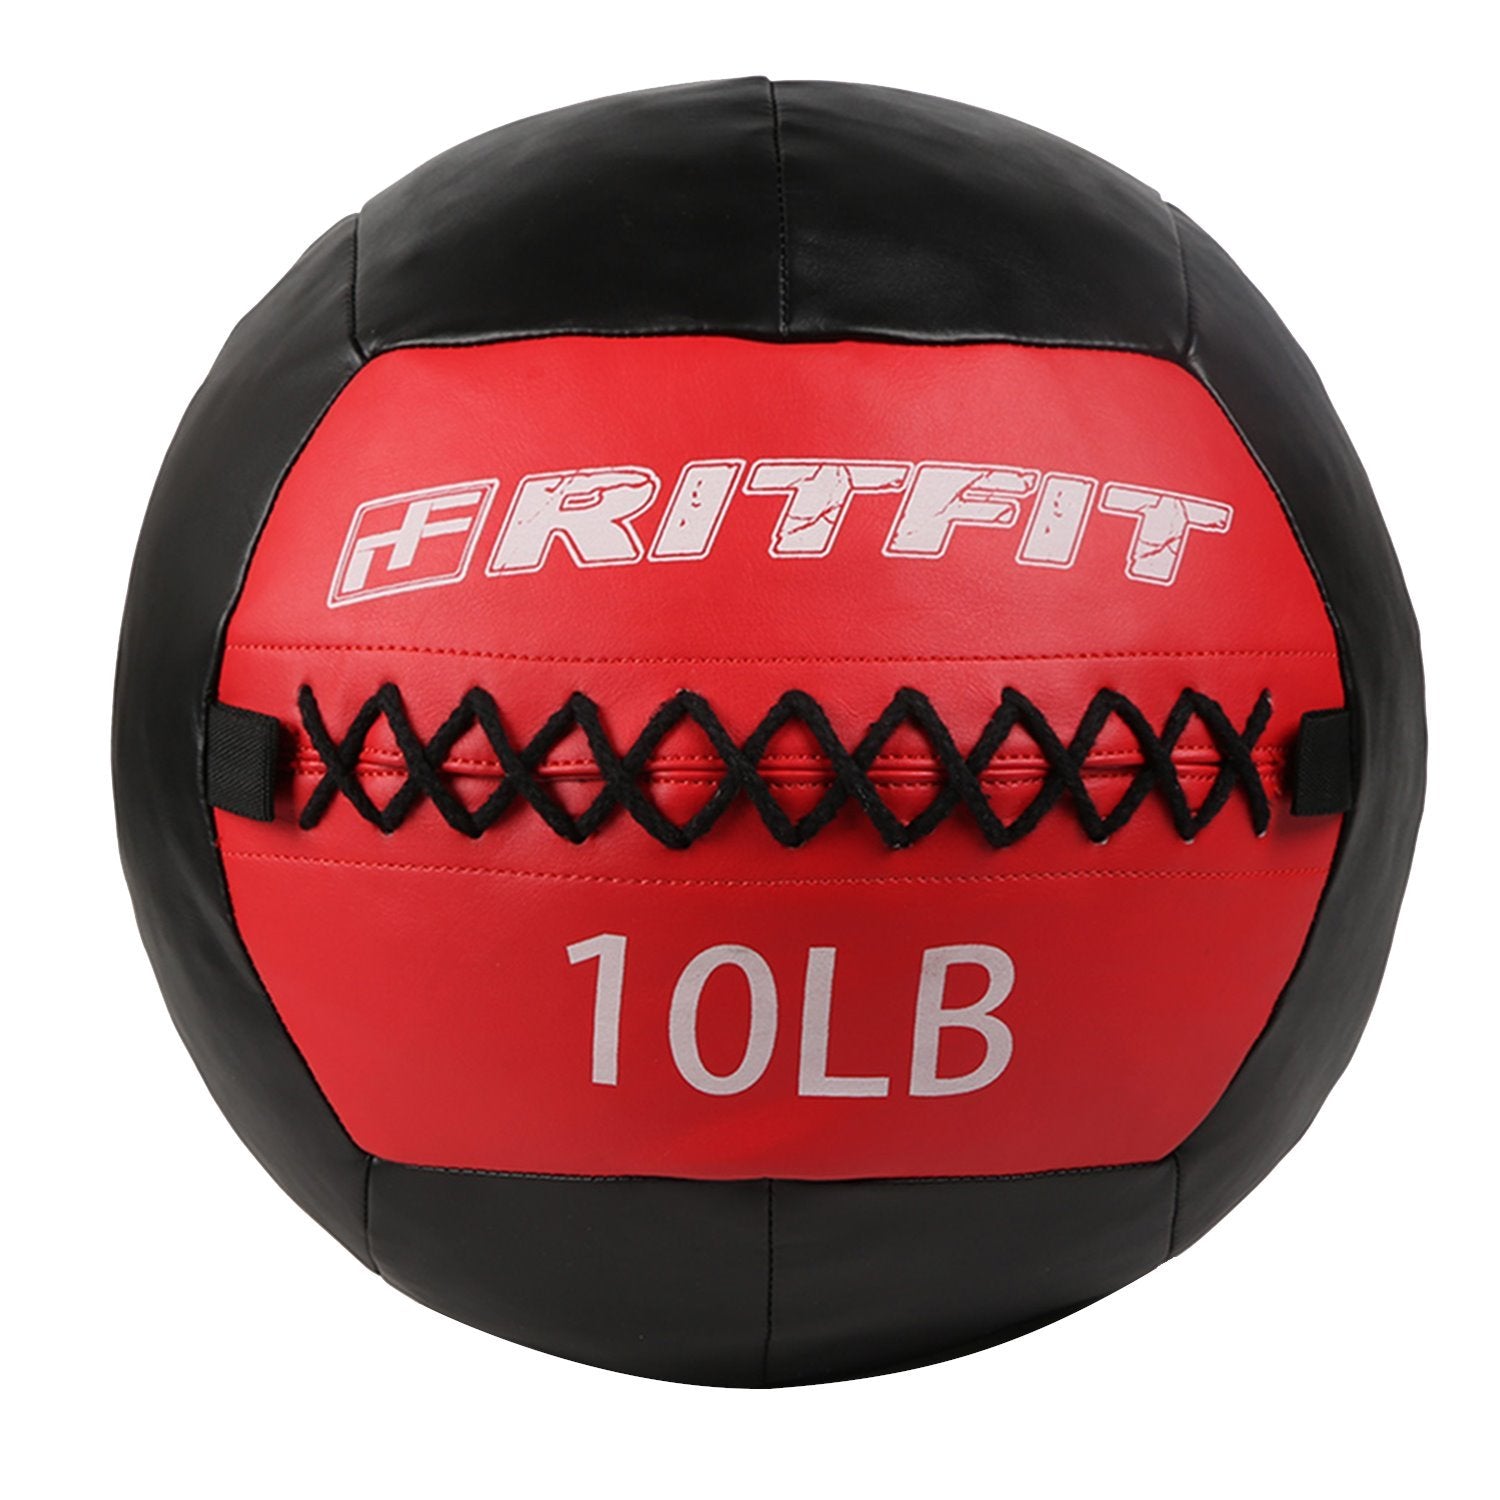 10 lb wall ball